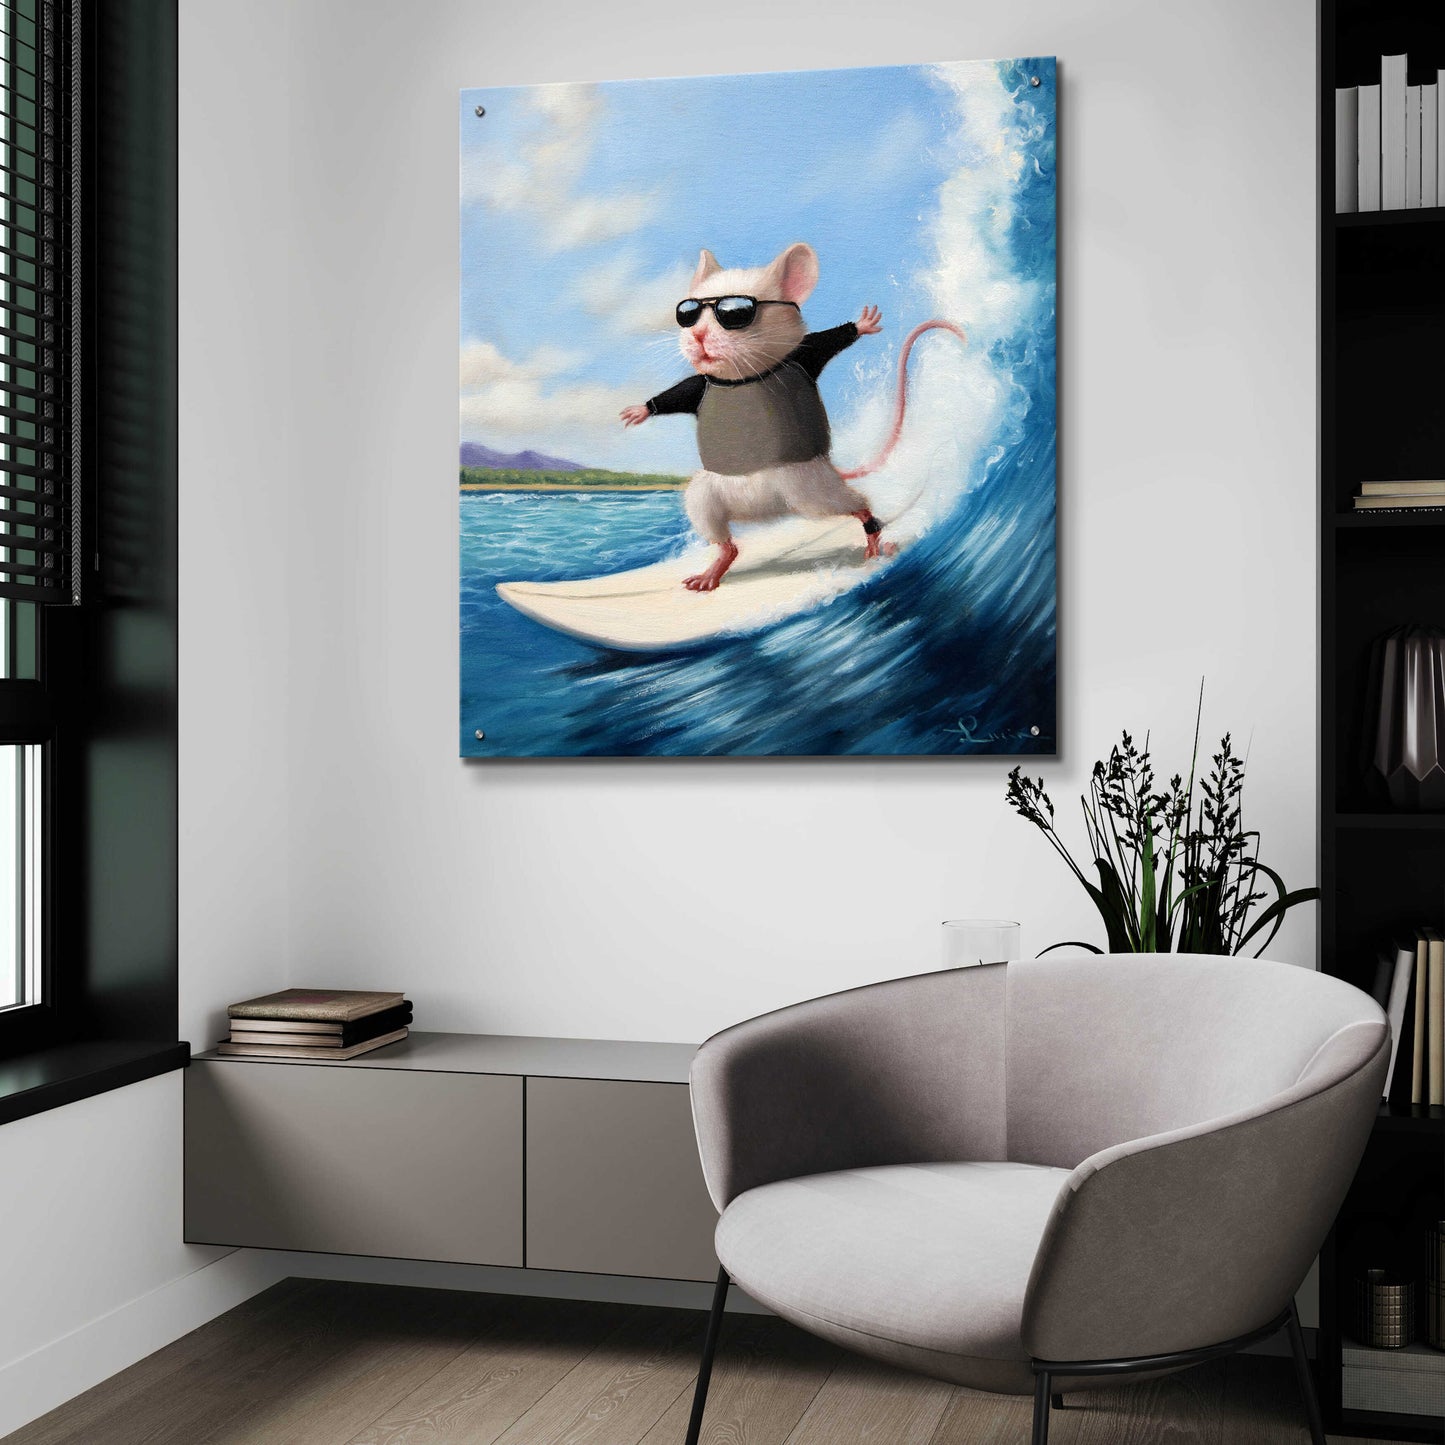 Epic Art 'Surfs Up' by Lucia Heffernan,36x36